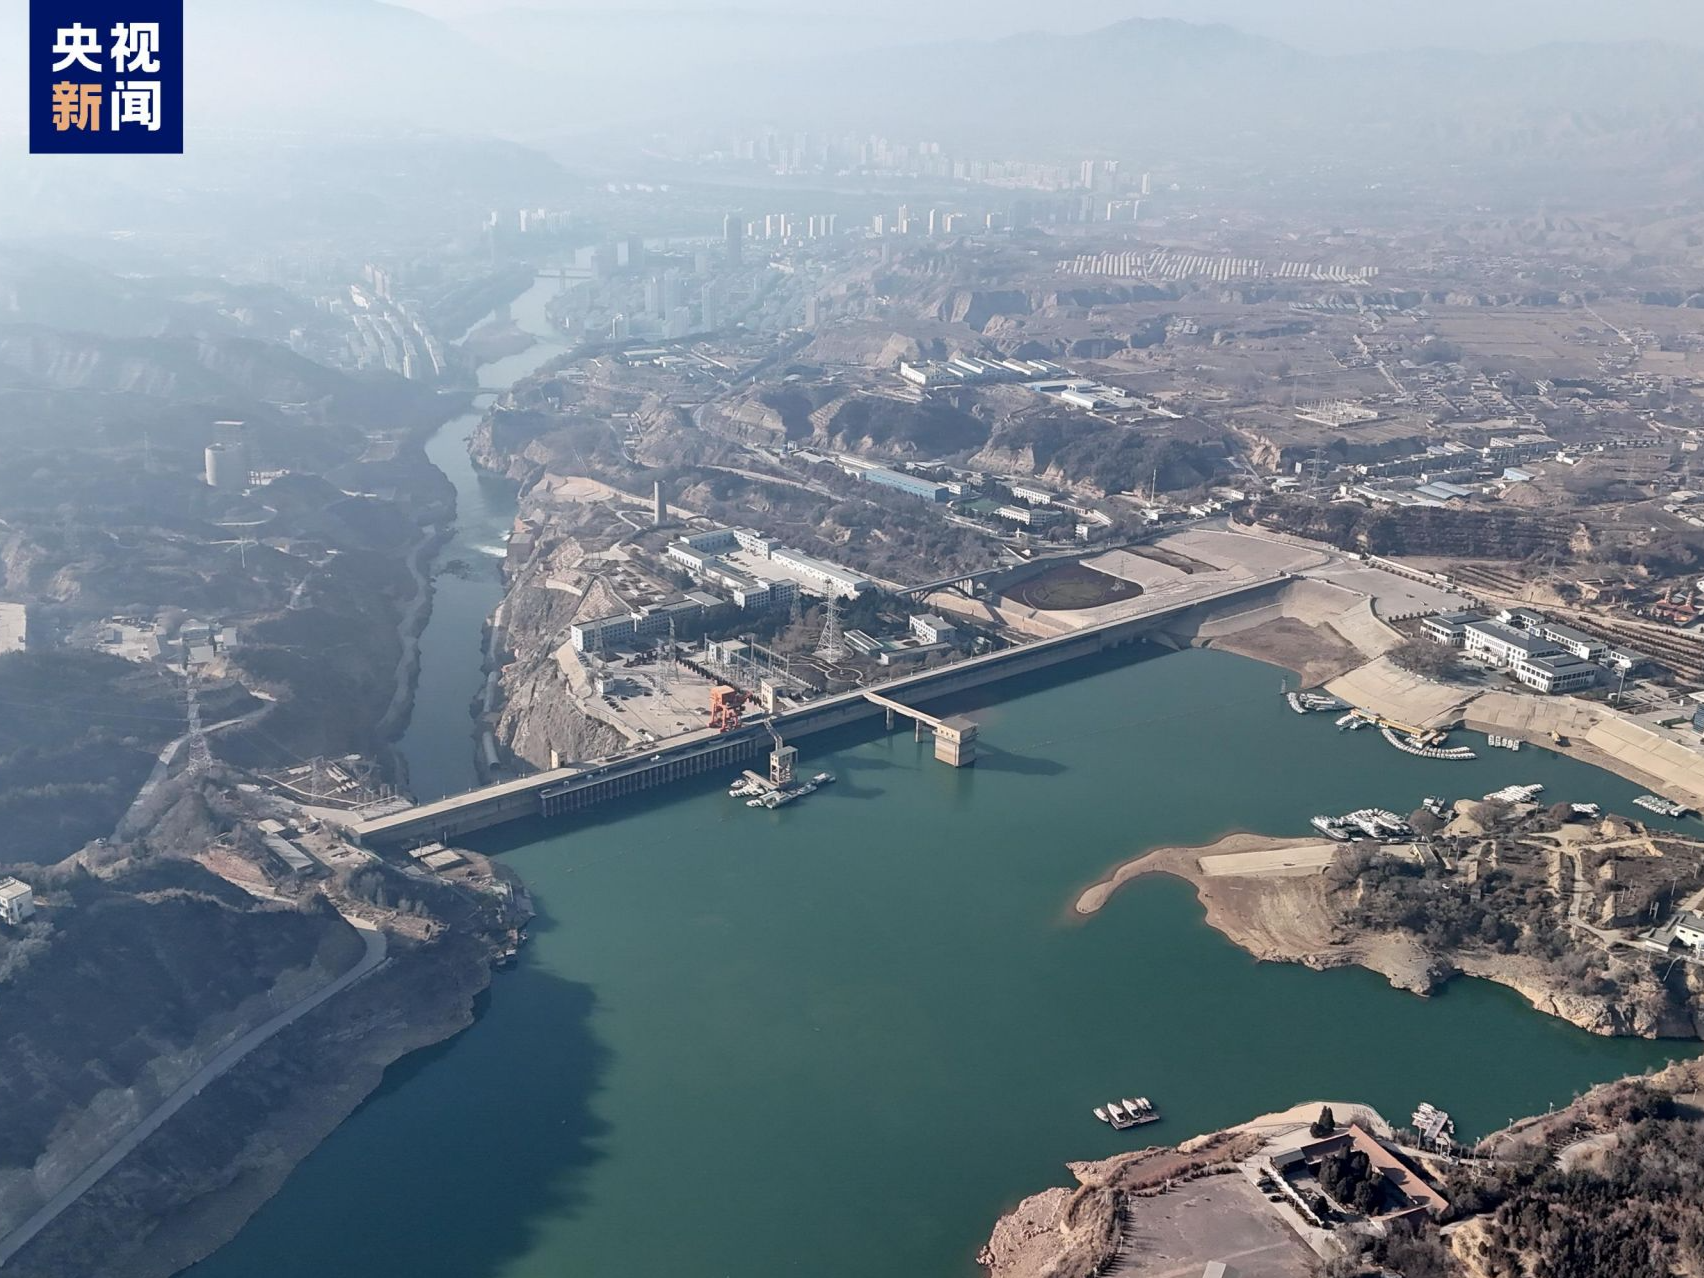 甘肃积石山6.2级地震暂时没有对刘家峡水电厂造成影响 